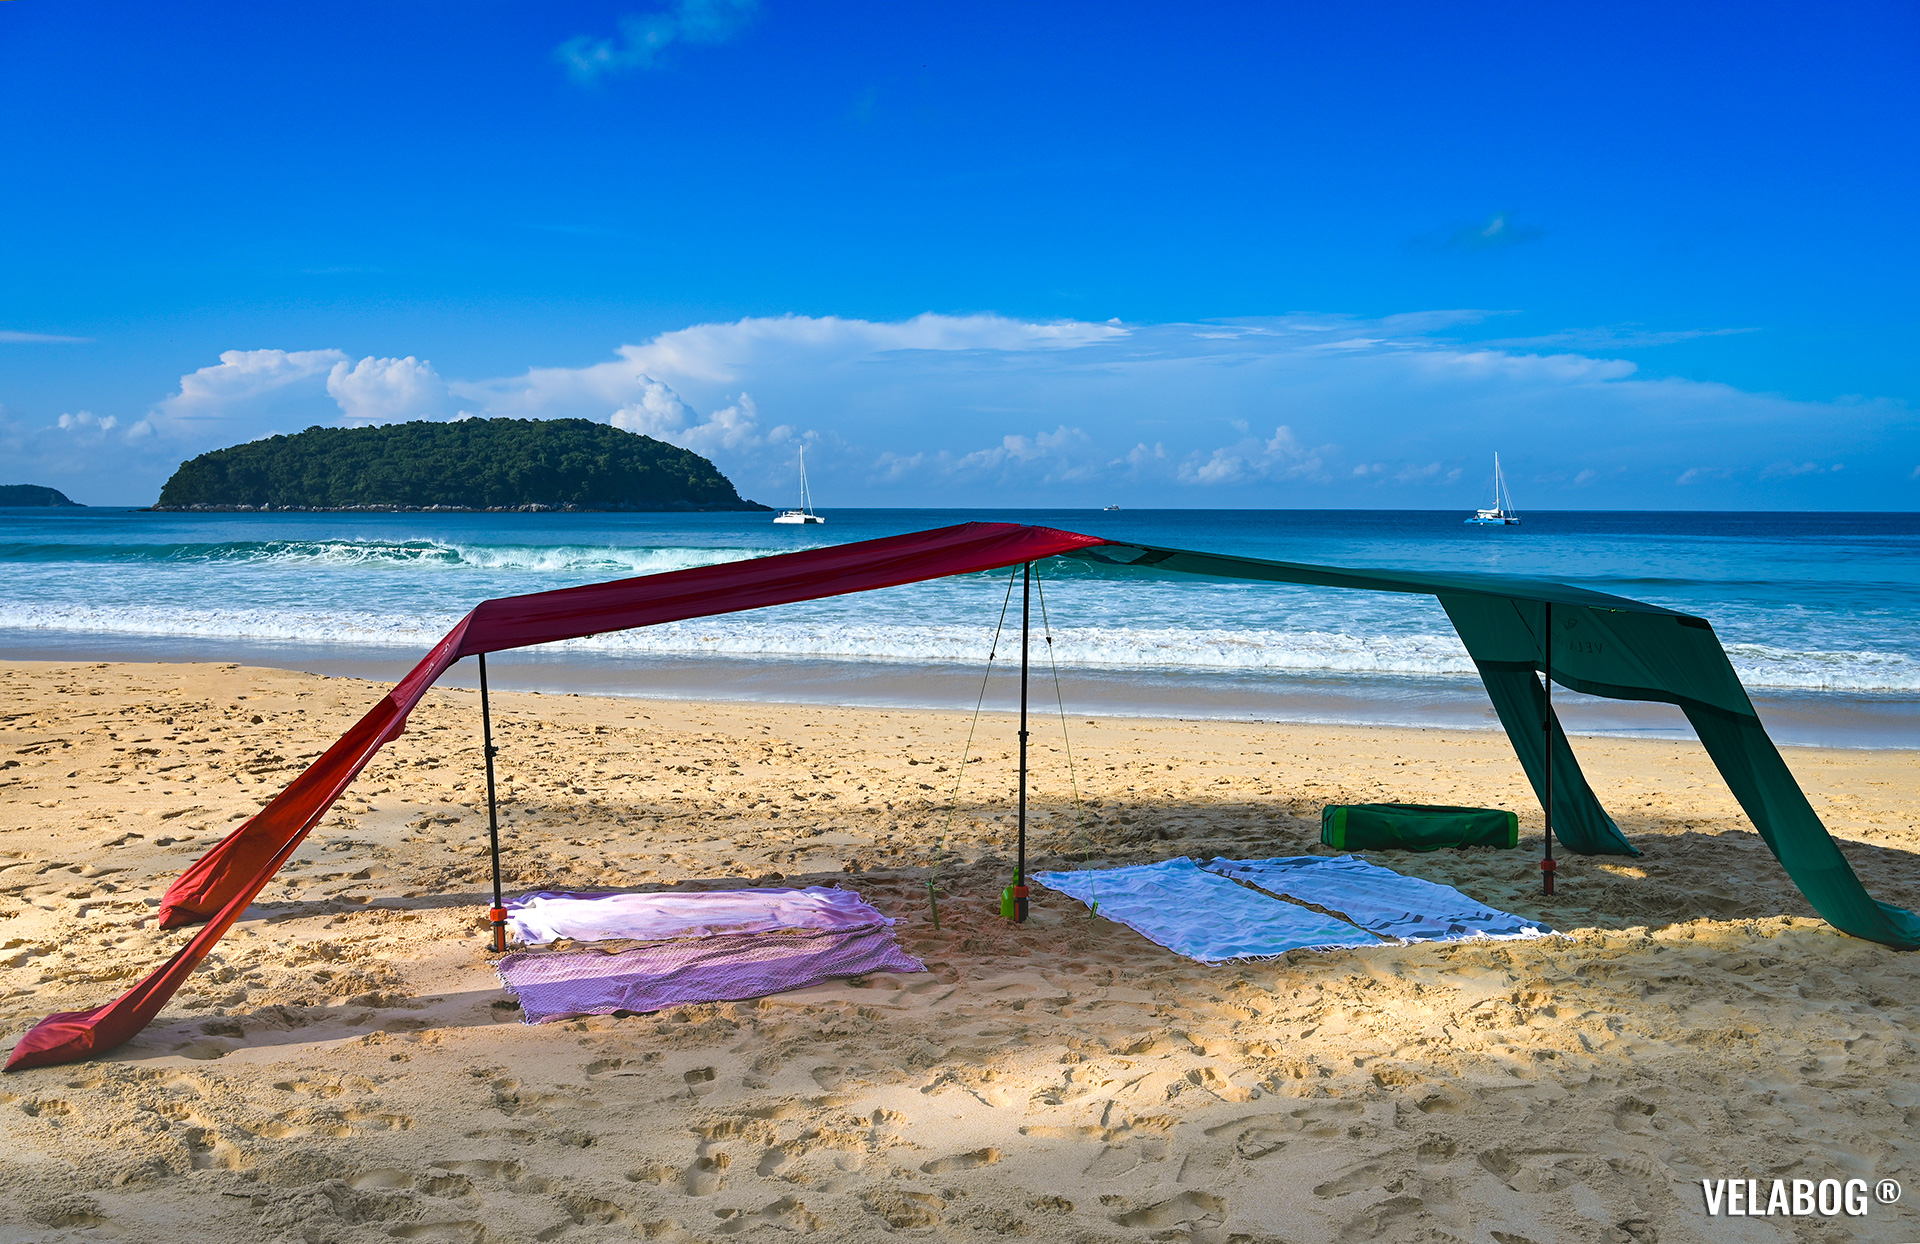 Комбинация двух солнечных парусов Velabog «Breeze». Лучшее укрытие от солнца на пляже. Места хватит и для семьи, и для друзей. Вариант установки с расширяющим набором. Безветренно или легкий ветер. Полный обзор.